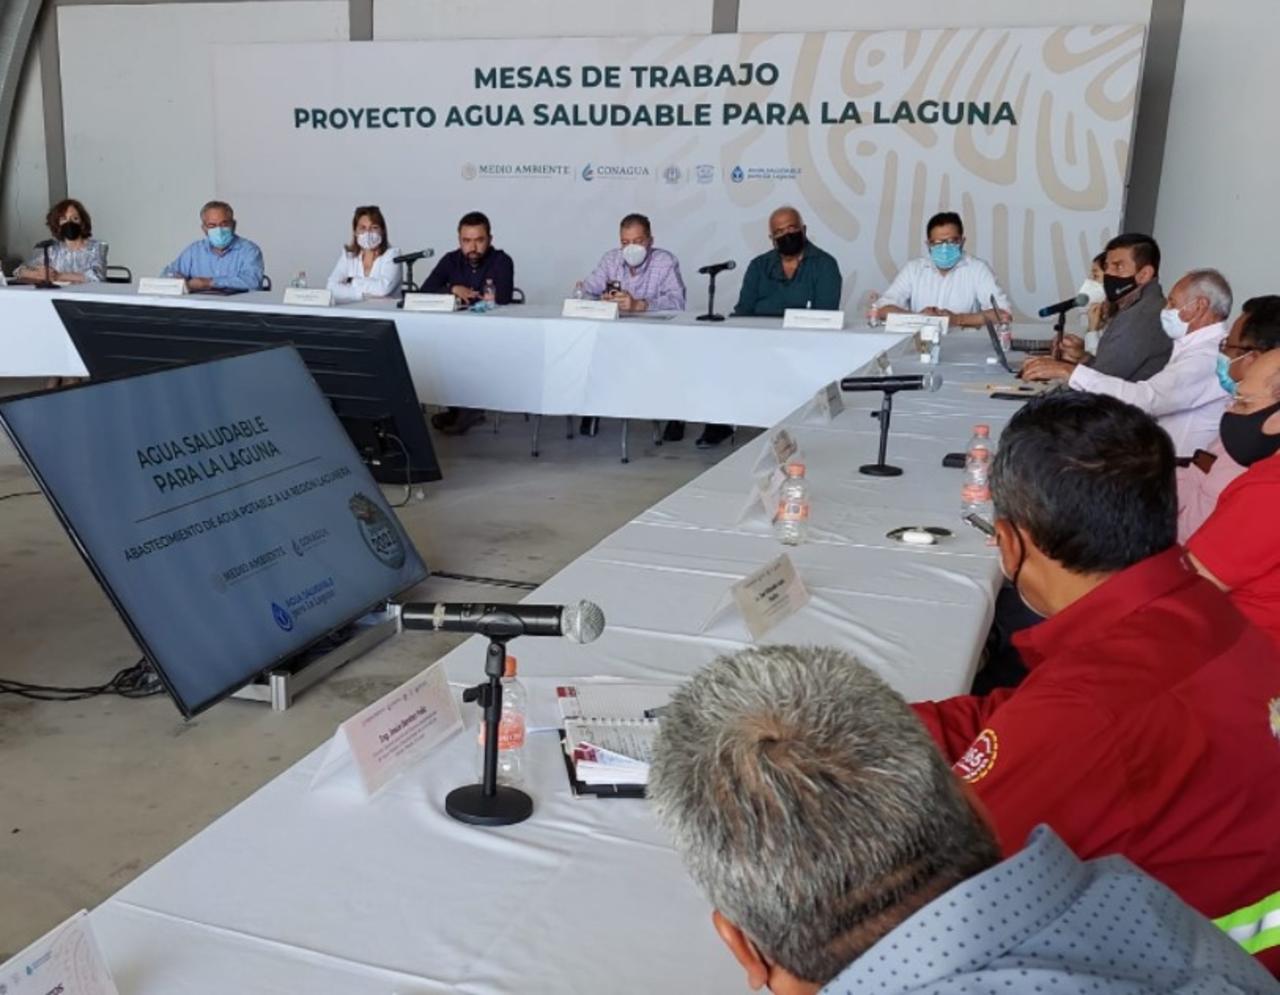 En seguimiento a las Mesas de Diálogo del proyecto Agua Saludable Para La Laguna este miércoles se llevó a cabo una reunión con representantes de los Sistemas Operadores de Agua Potable y Saneamiento de los 9 municipios involucrados en el proyecto donde participaron autoridades regionales de CONAGUA.